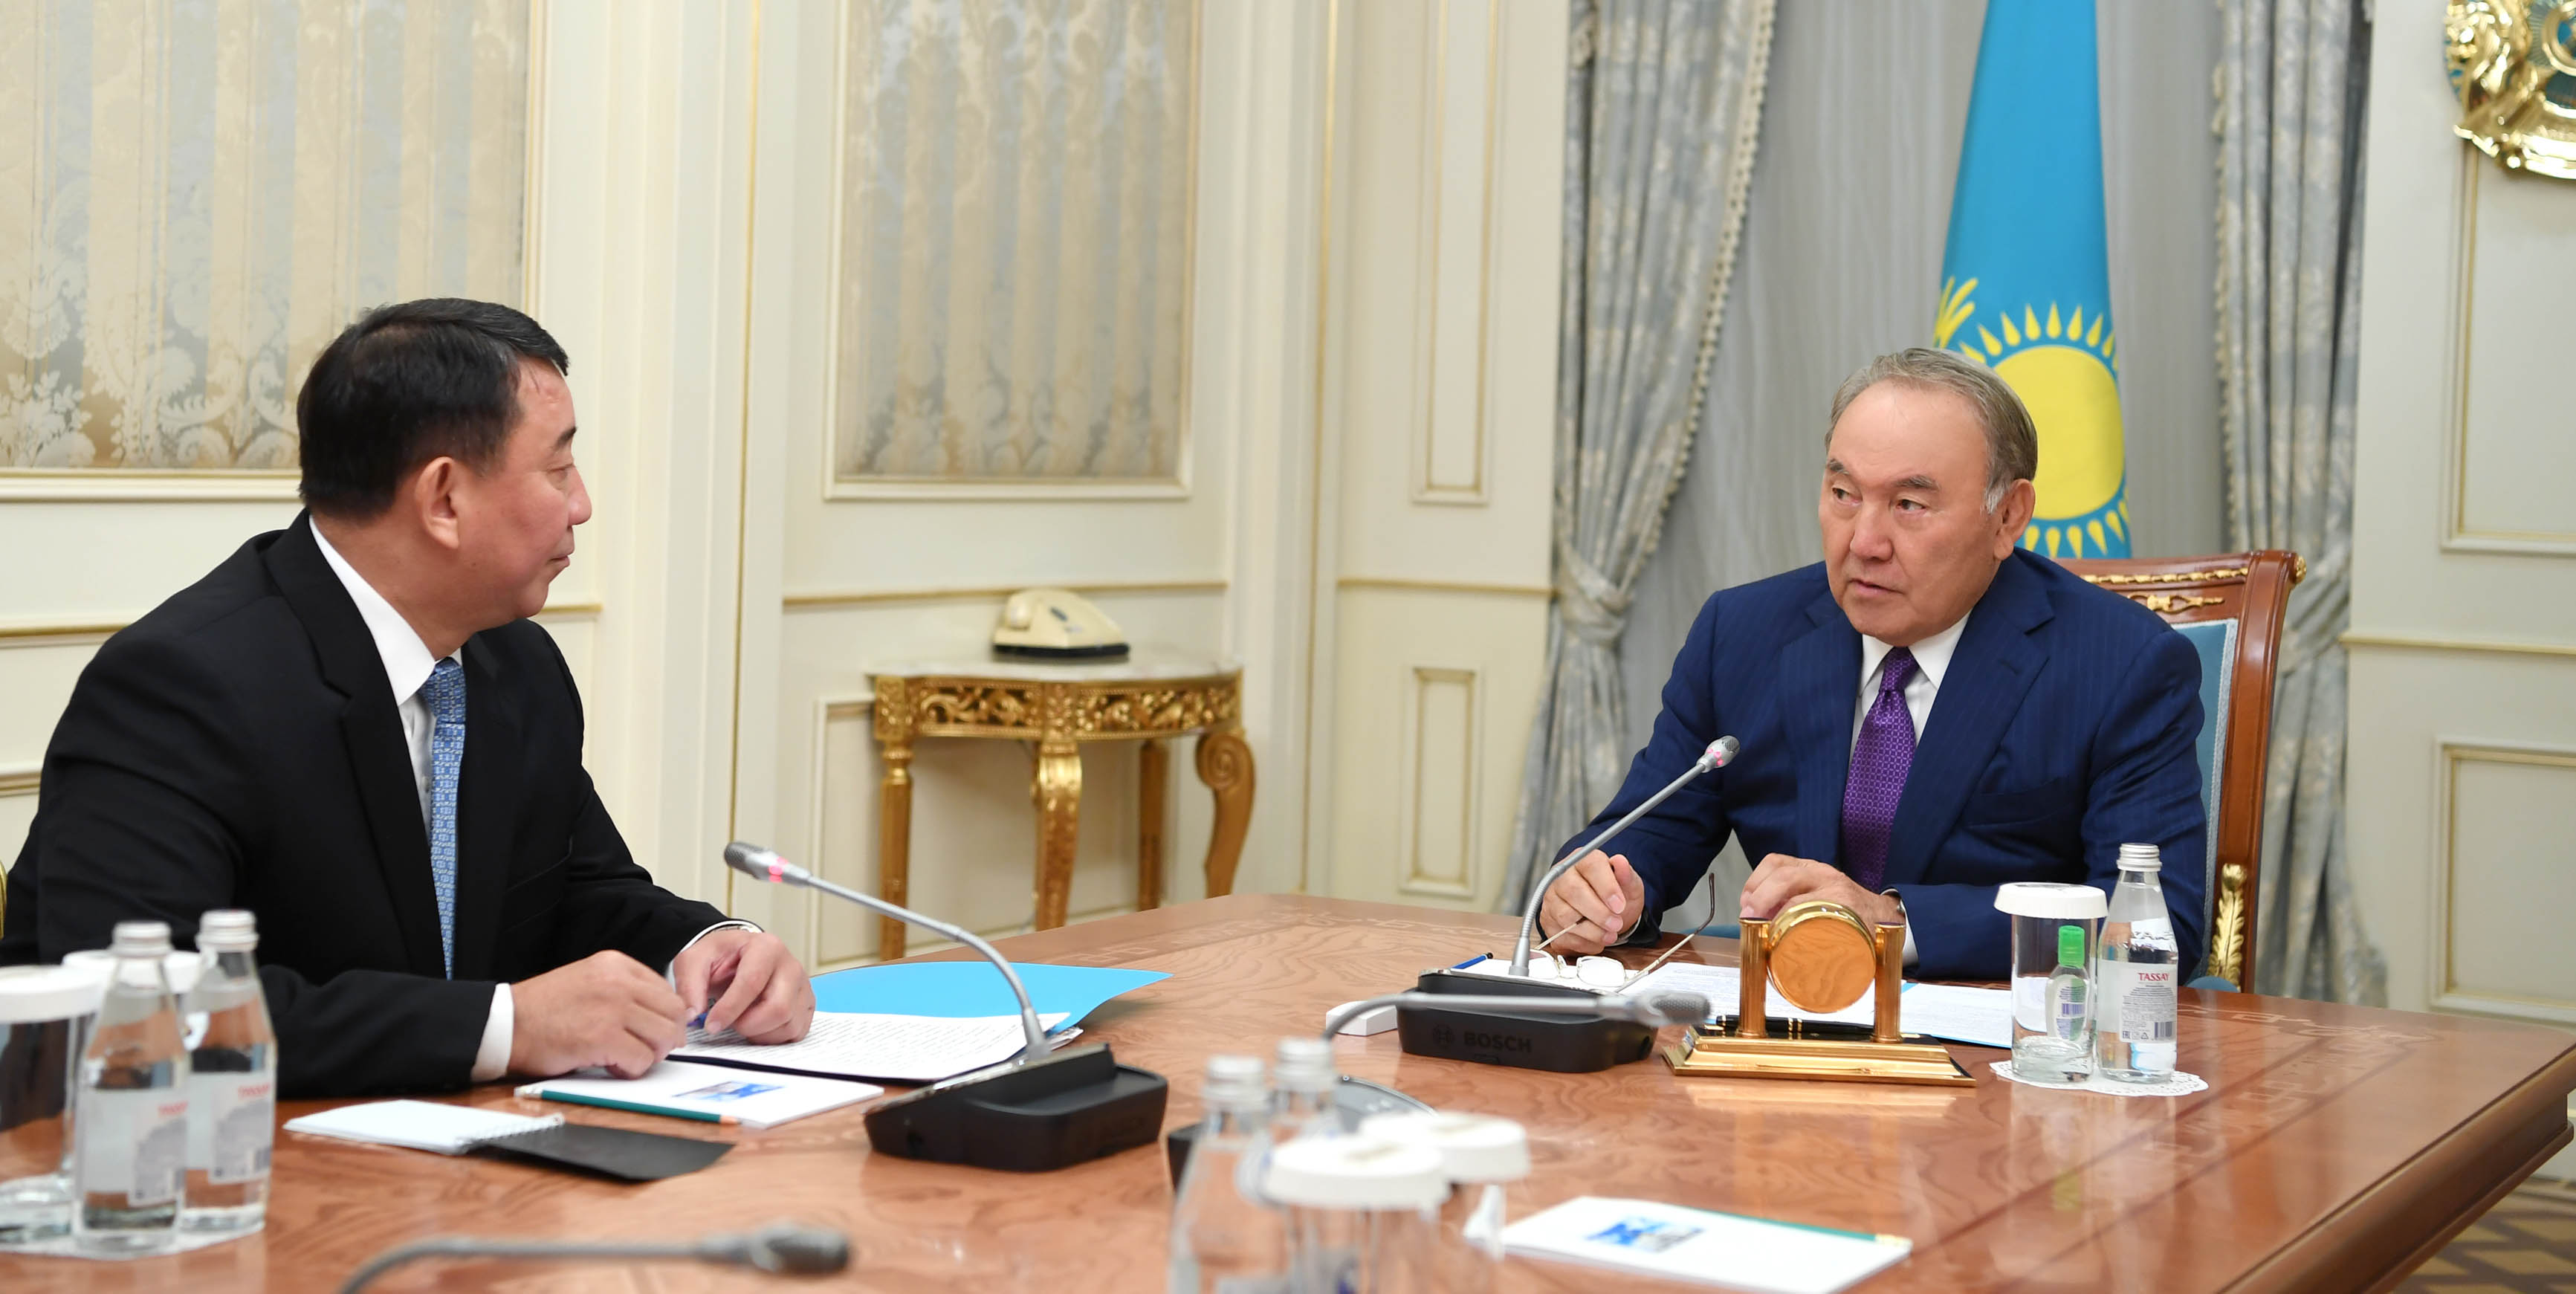 Глава государства встретился с директором Службы внешней разведки «Сырбар» 